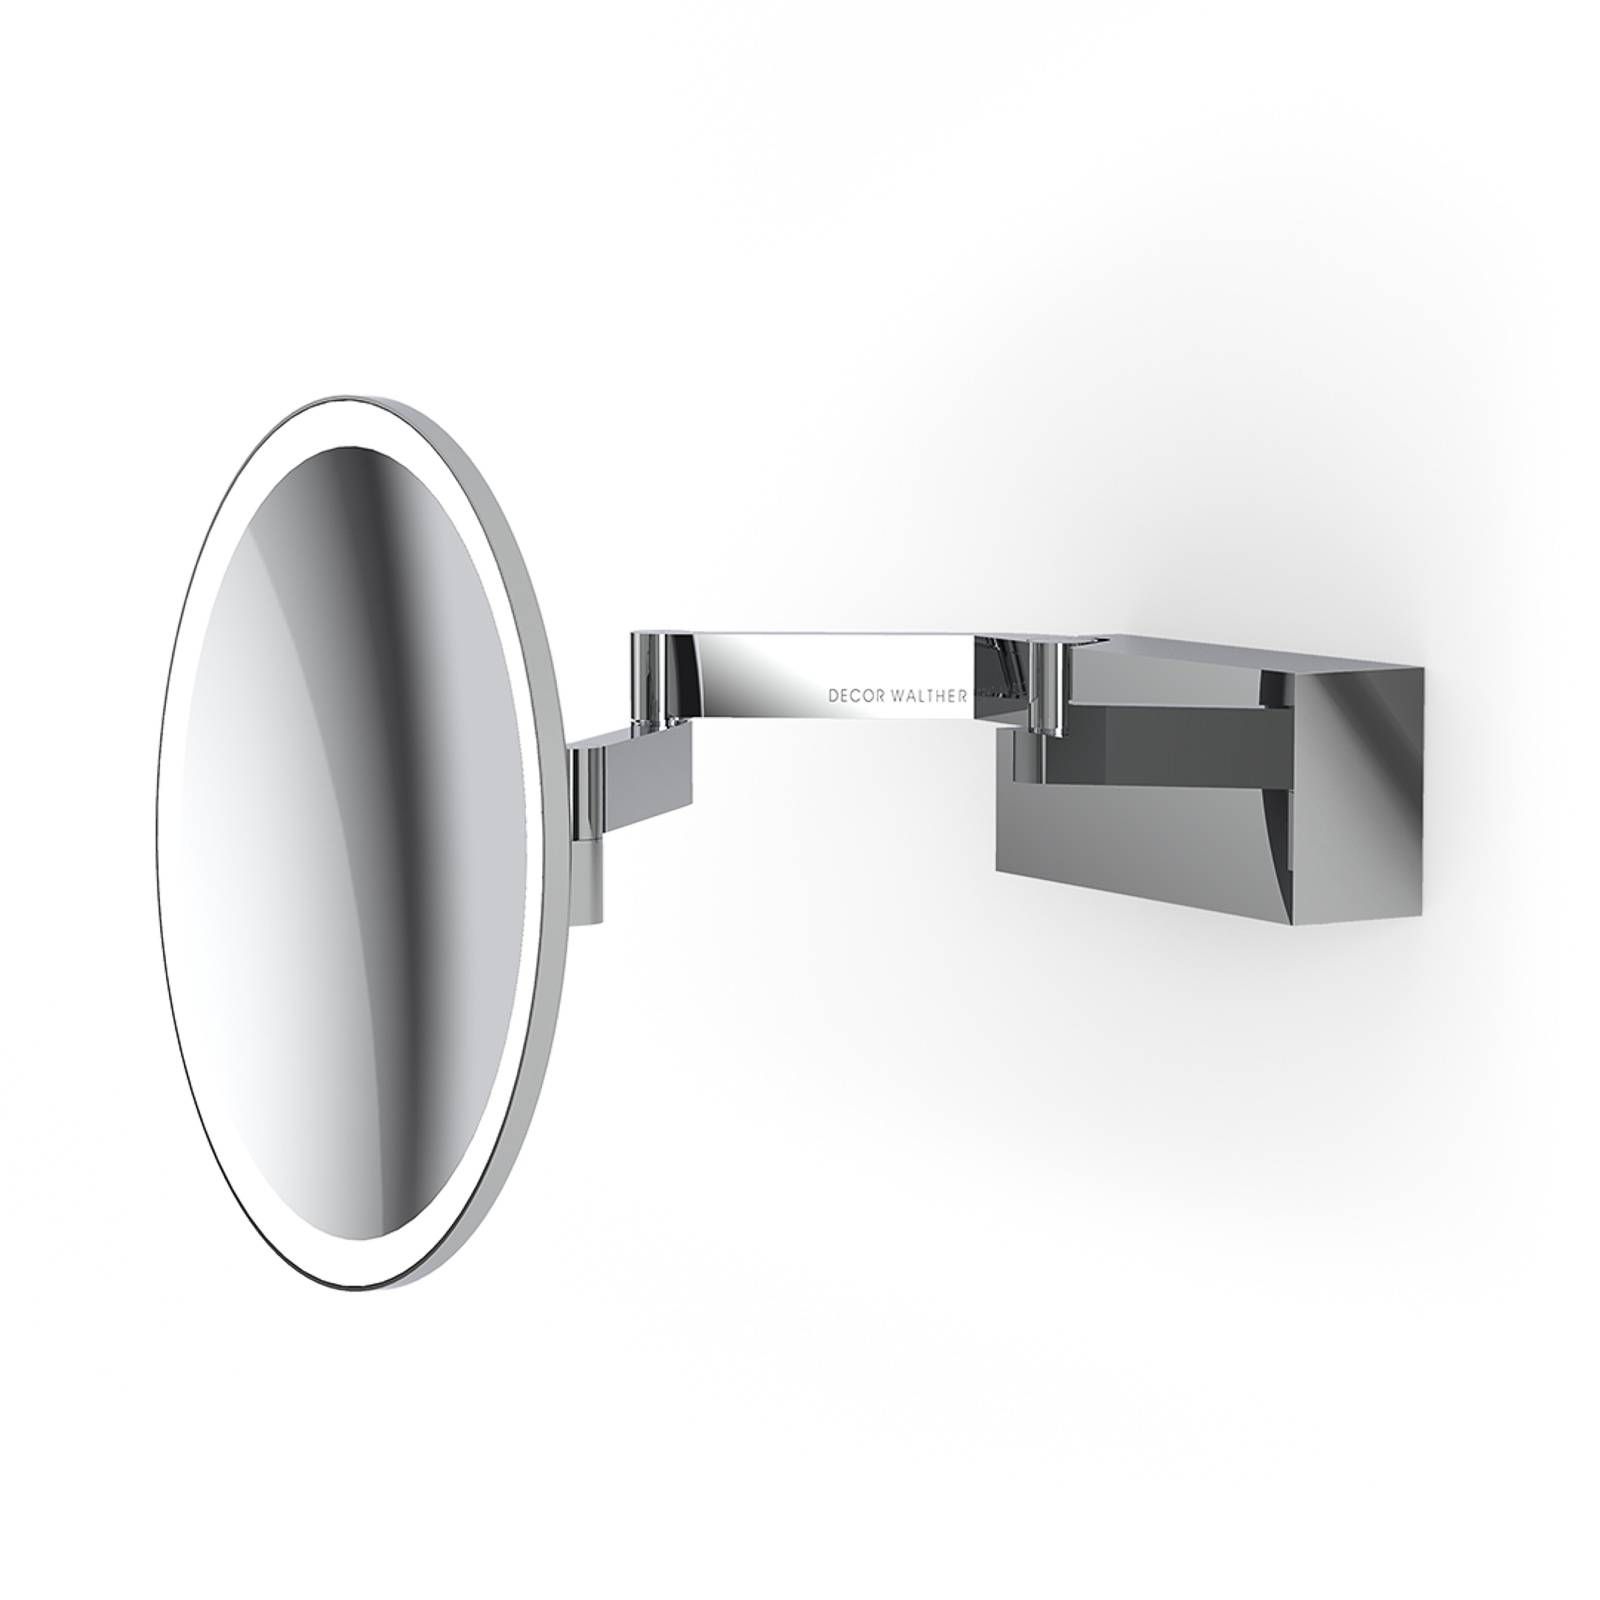 Decor Walther Vision R LED zrkadlo chróm, Kúpeľňa, ušľachtilá oceľ, železo, sklo, 4W